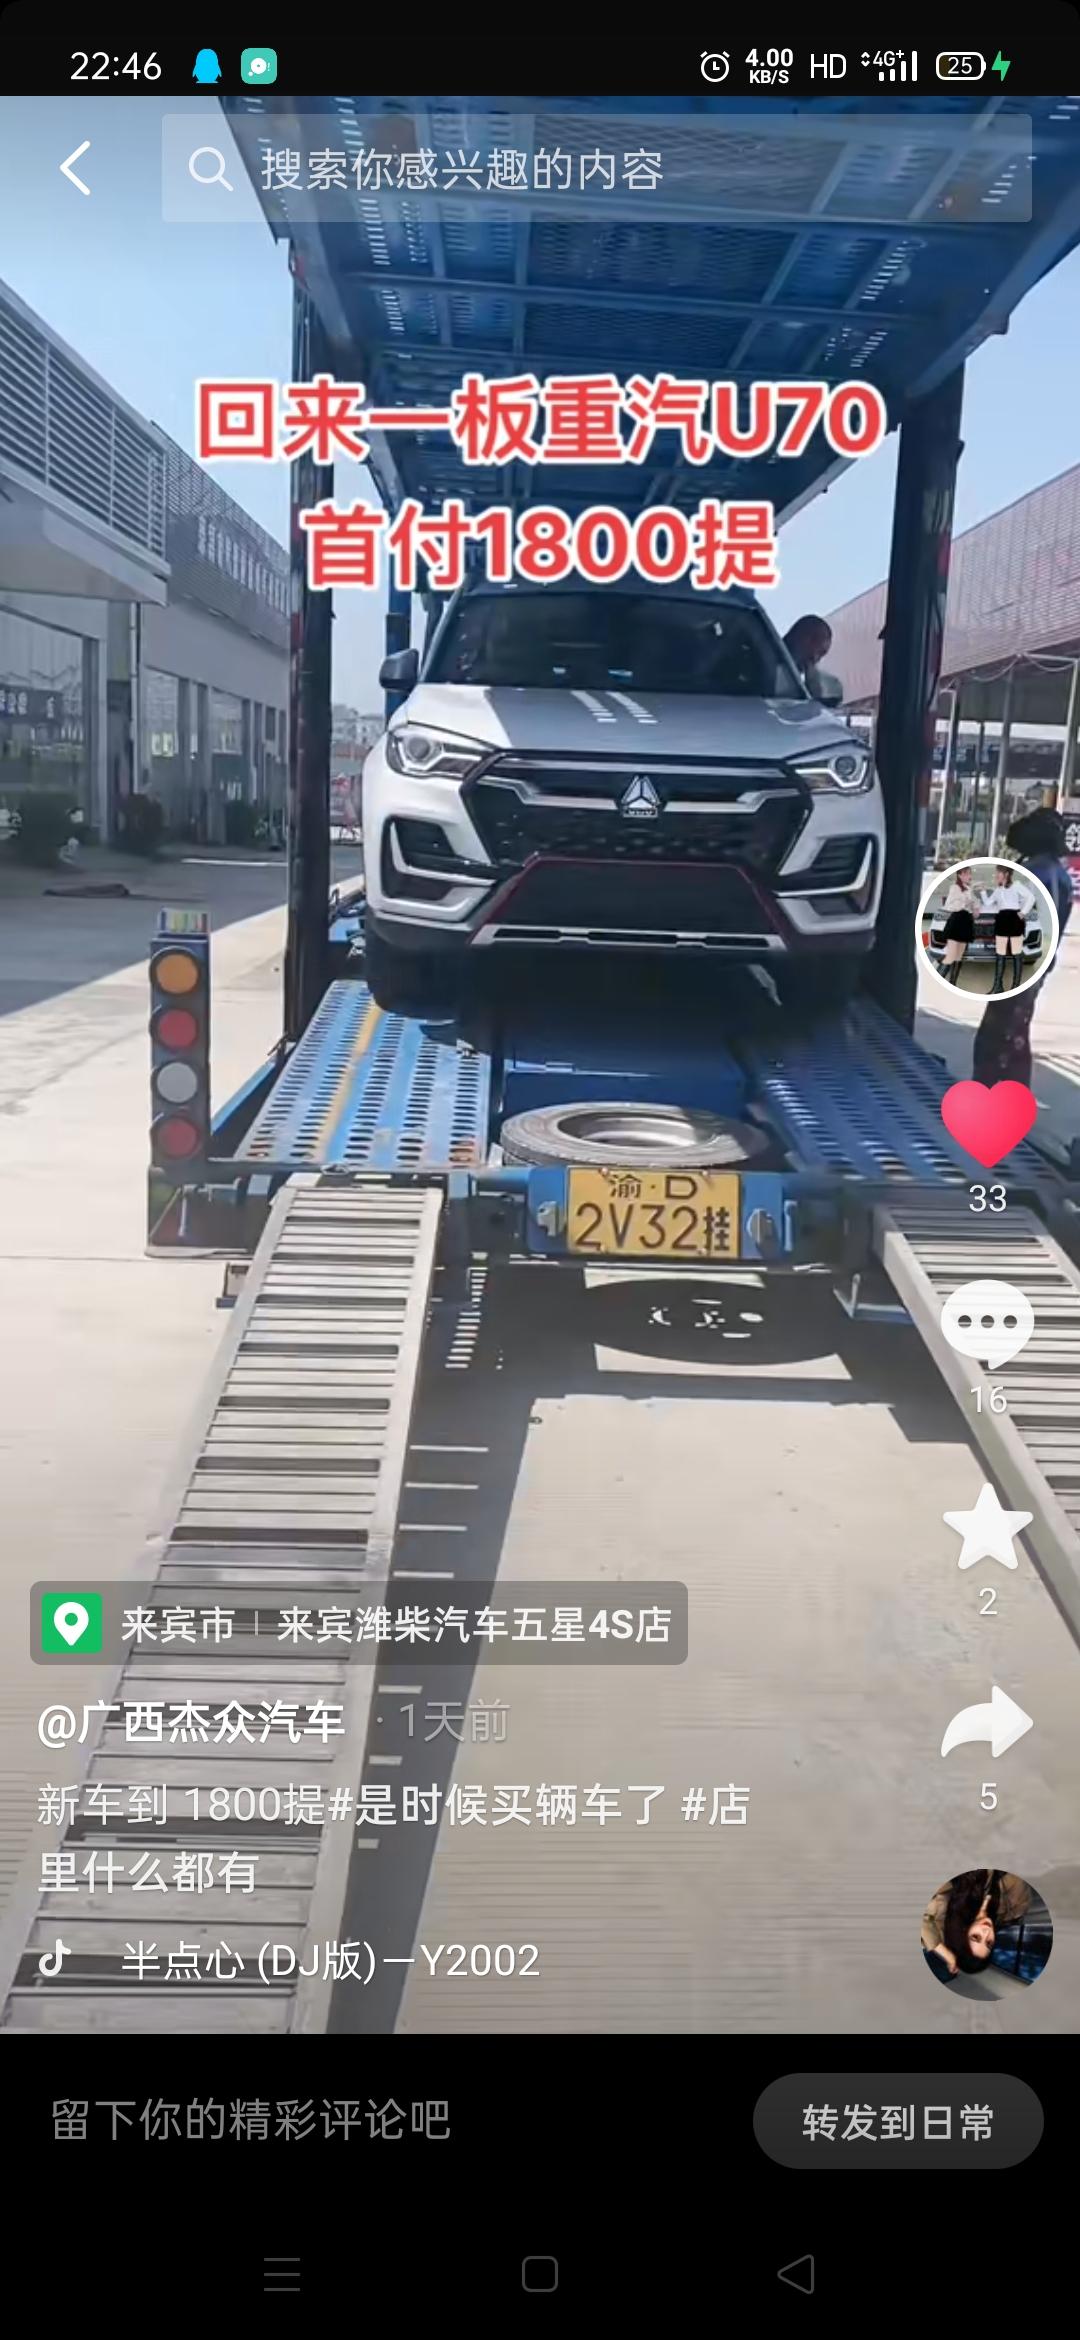 中国重汽VGVVGV U70 我在抖音上看的这款  怎么懂车帝上没图片。  这是新款吗？感觉这个好看些。想买 又怕别人喷